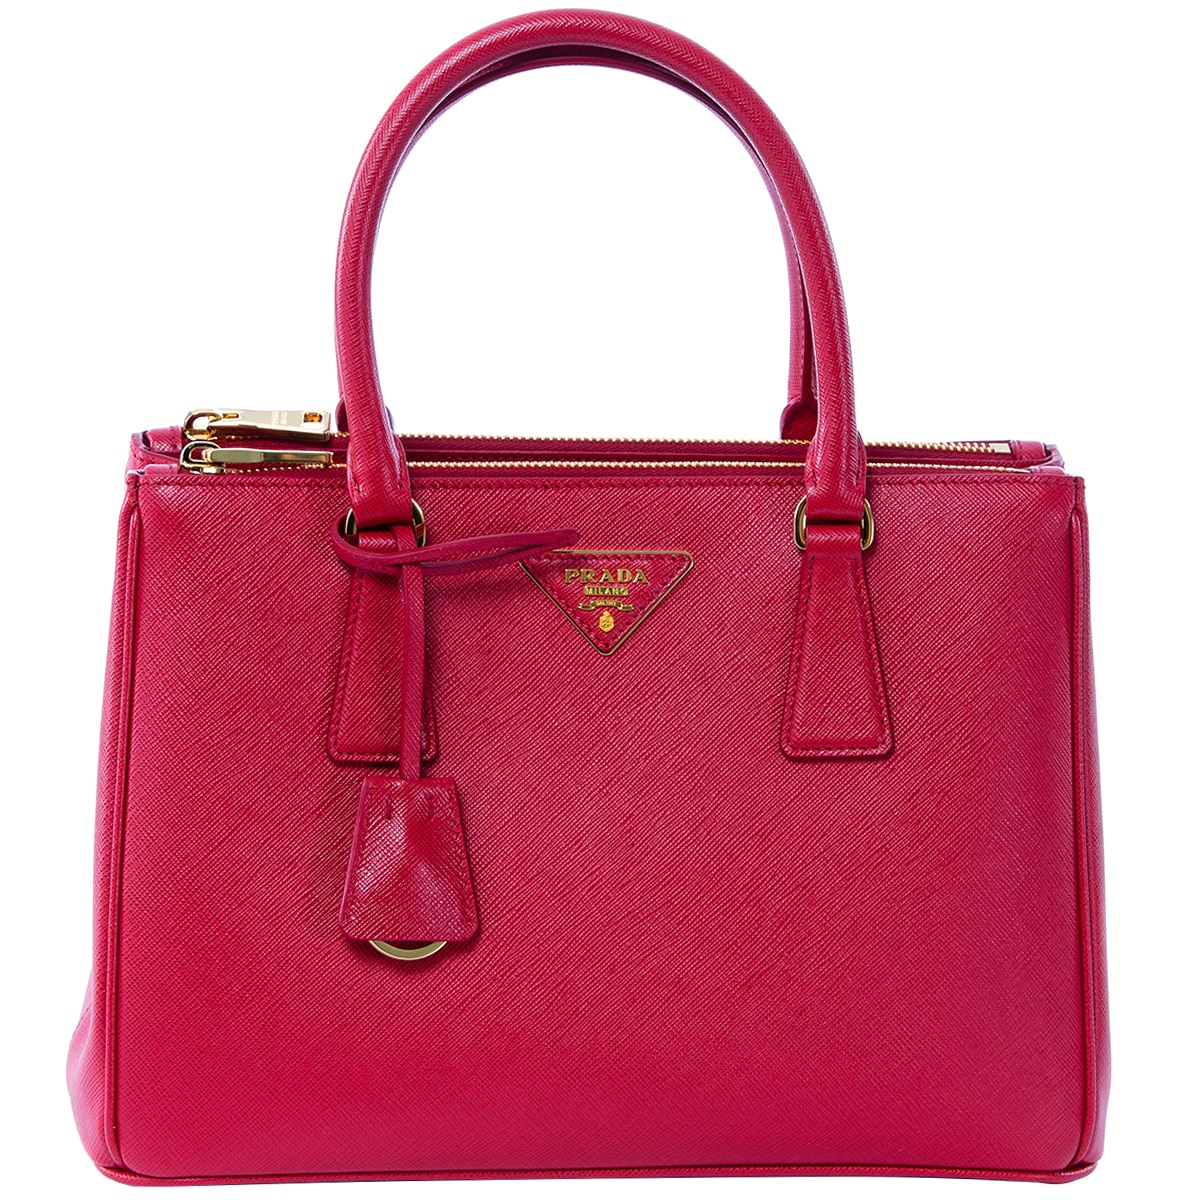 Prada Galleria Small Saffiano Bag Red | Costco Australia